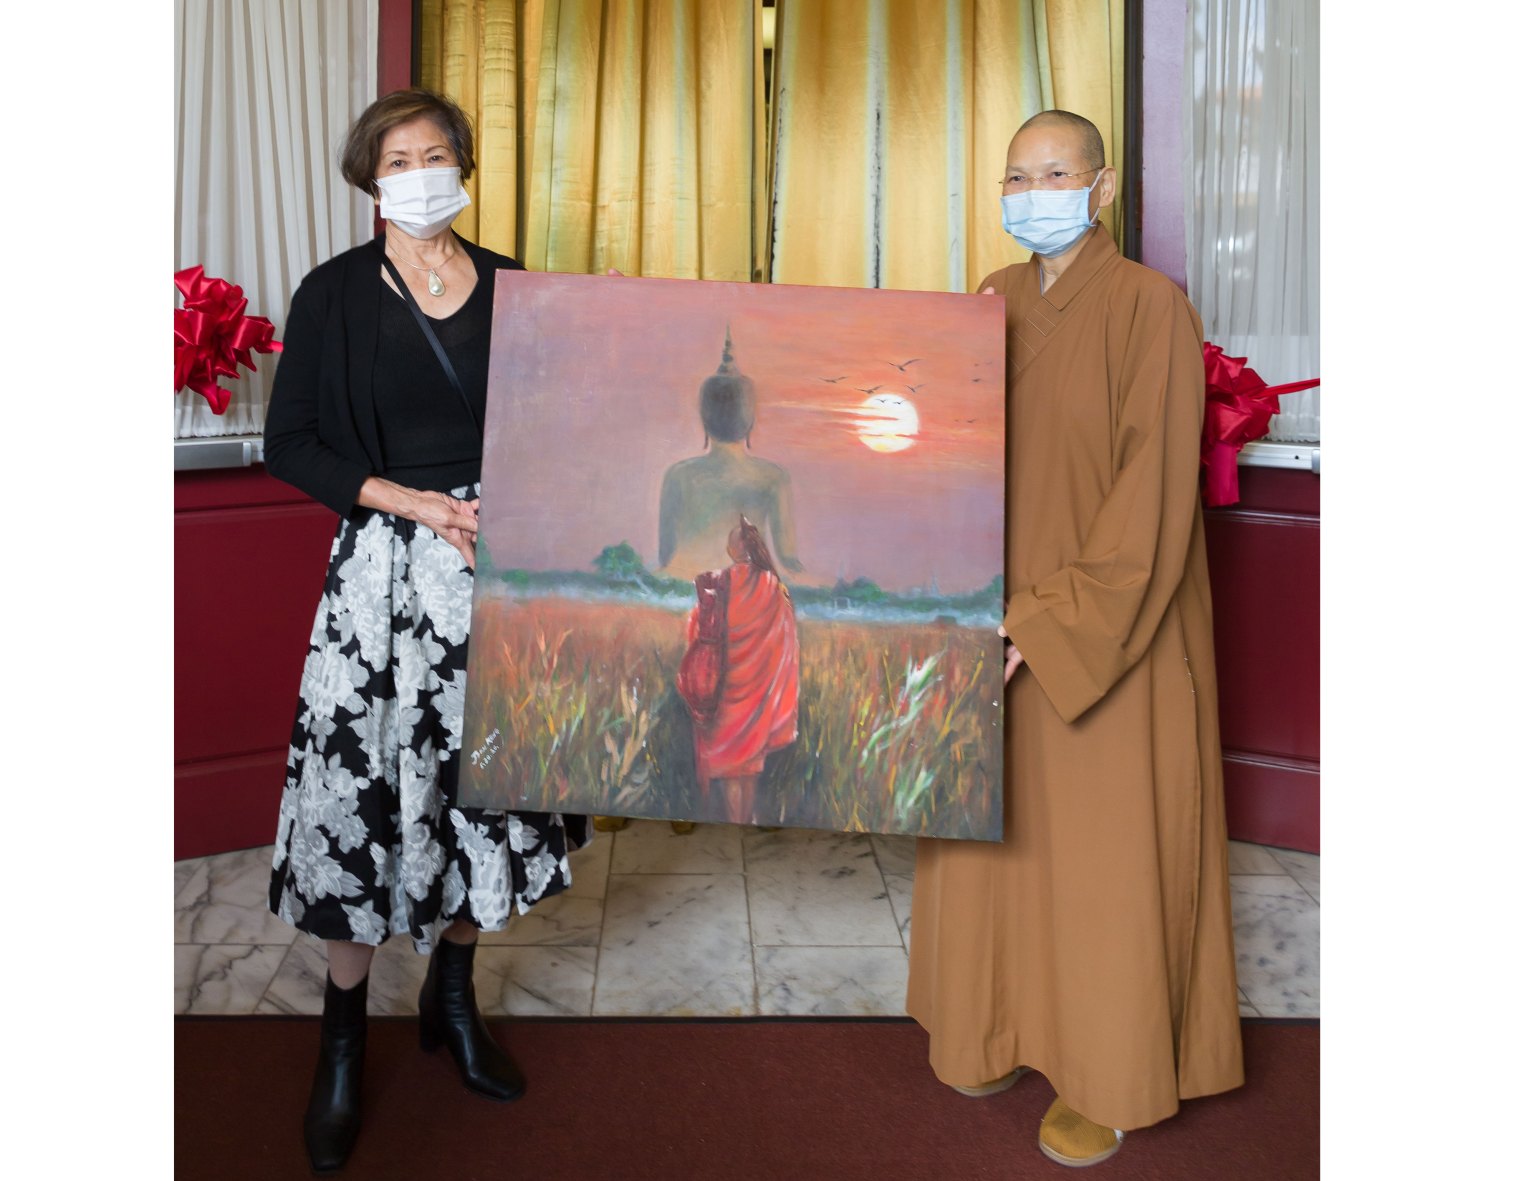 耿珍贈一幅其作品油畫「修行者」給予西來寺以表其謝意